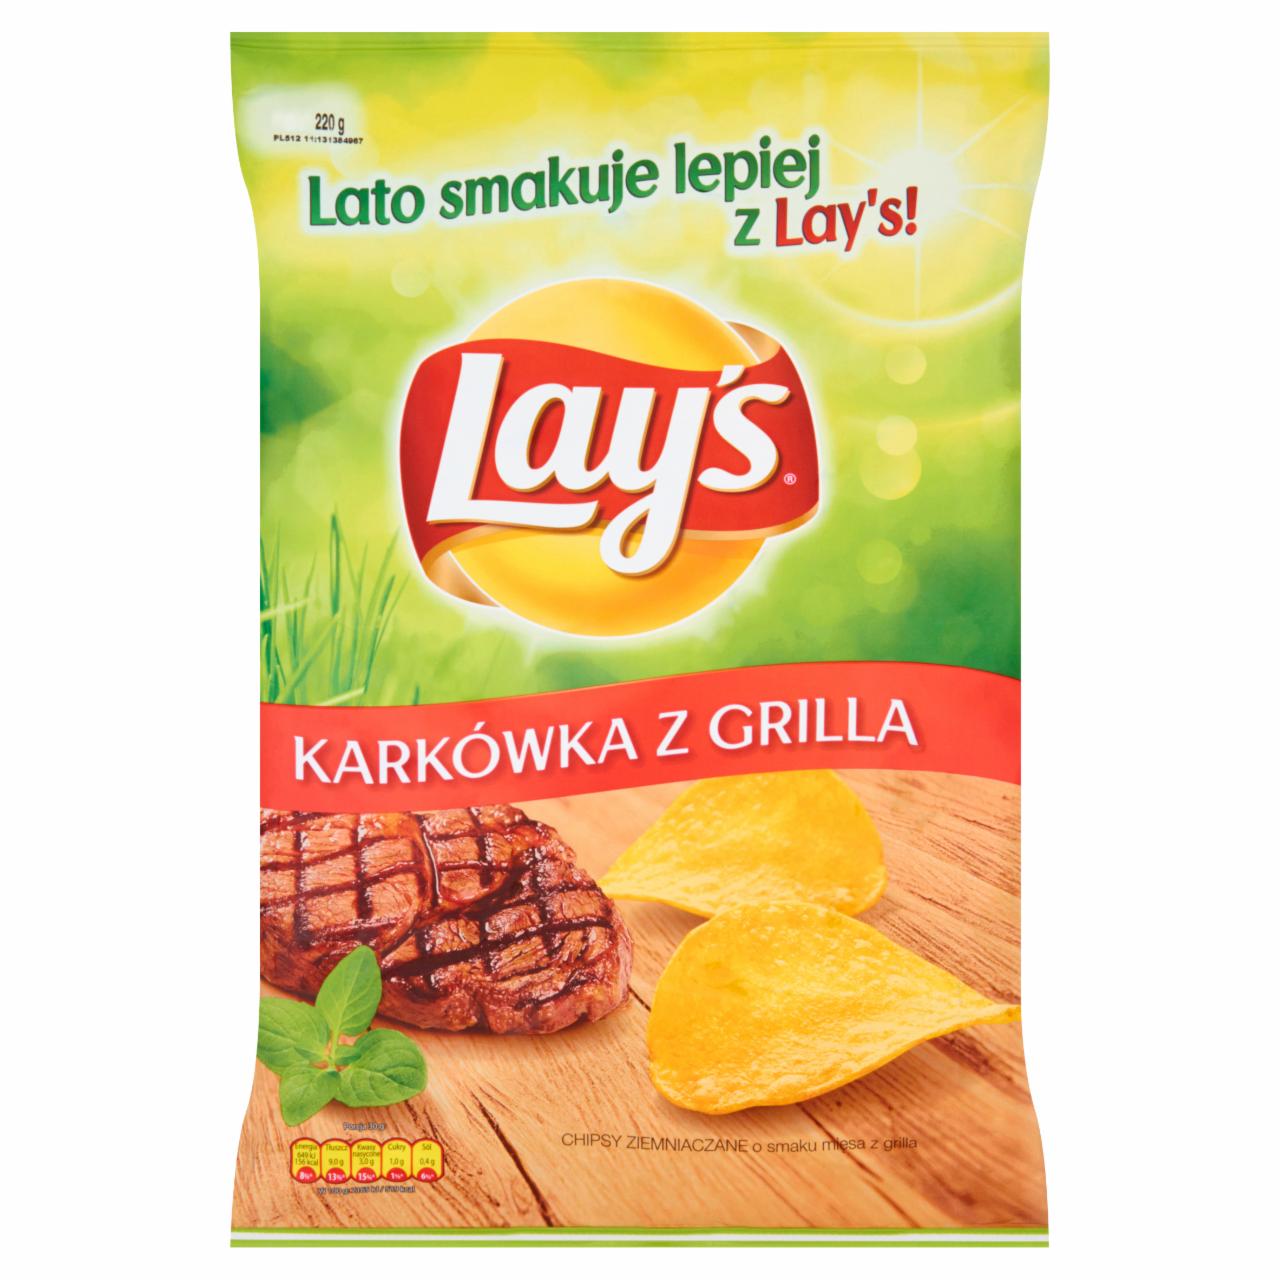 Zdjęcia - Lay's Karkówka z grilla Chipsy ziemniaczane 220 g